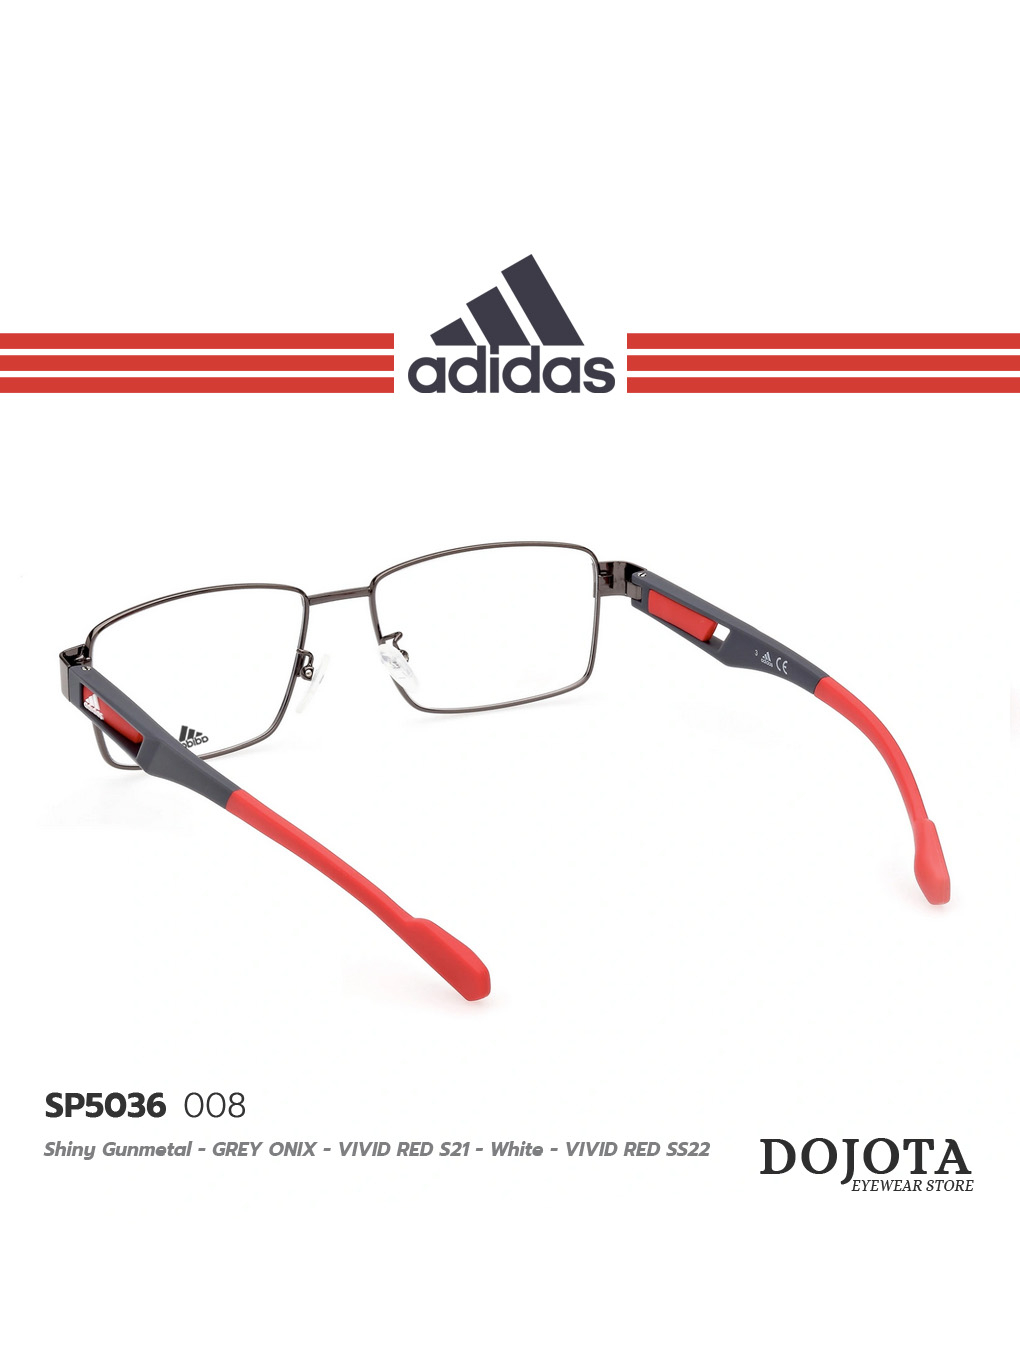 กรอบแว่นตาสไตล์สปอร์ต-adidas-รุ่น-sp5036-008-แบรนด์ลิขสิทธิ์แท้-ดีไซน์สปอร์ต-วัสดุคุณภาพดี-ทนทาน